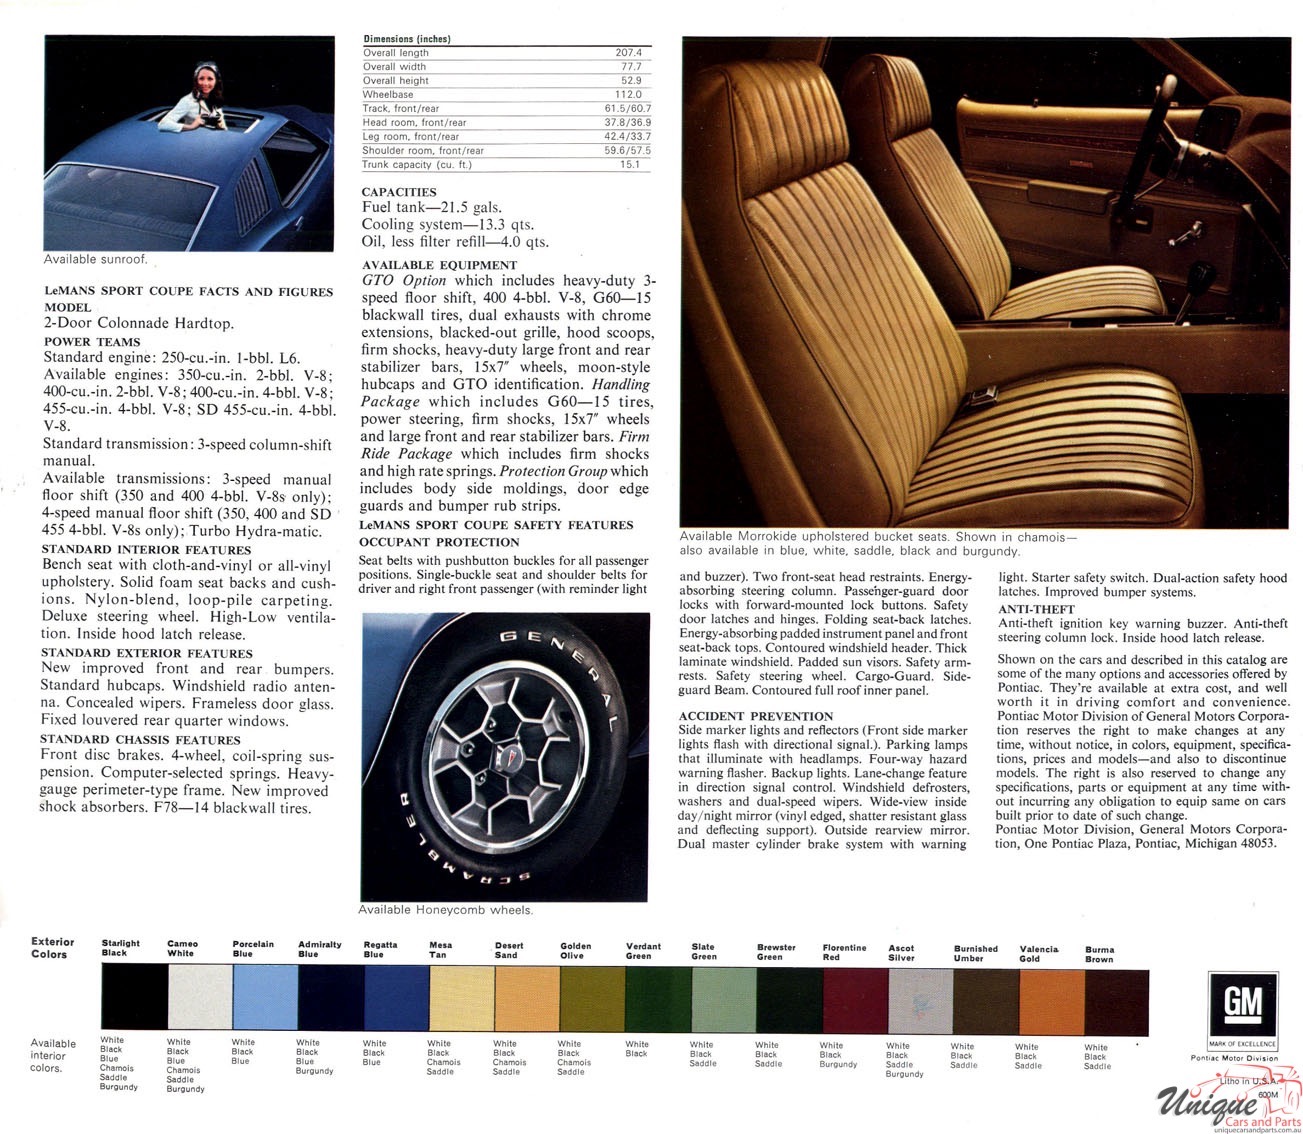 1973 Pontiac LeMans Sport Coupe Brochure Page 4